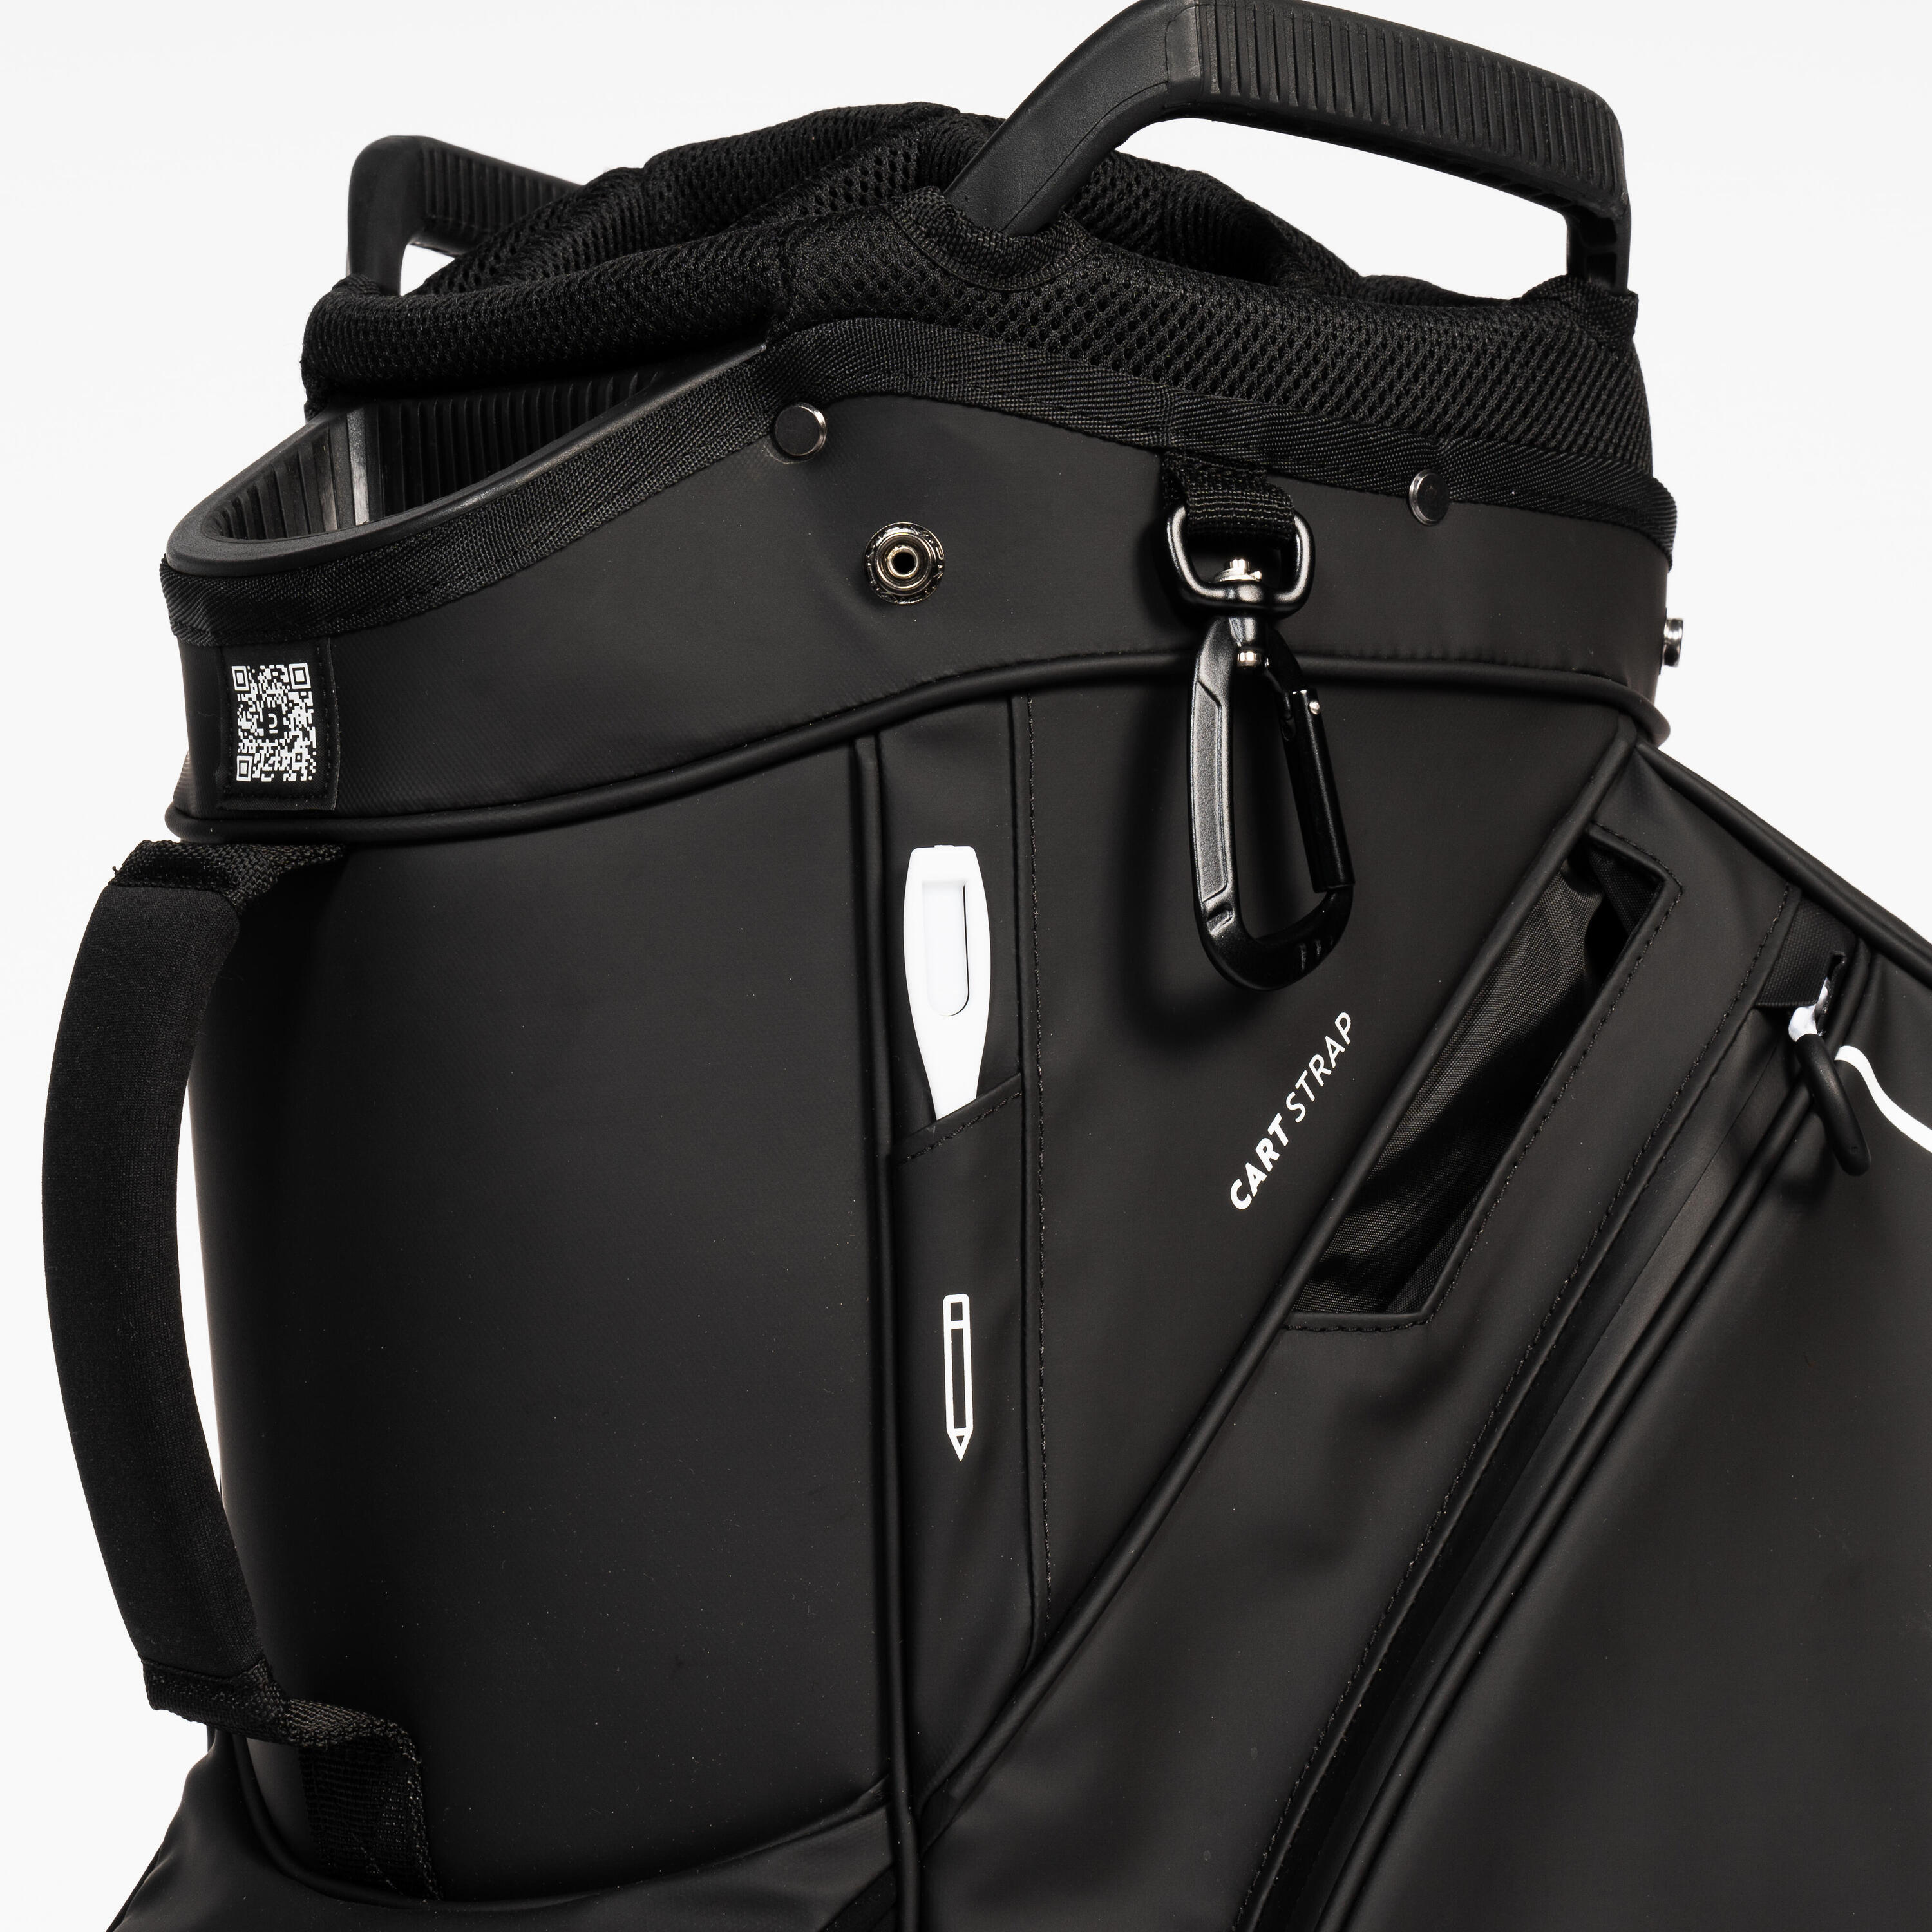 Golf trolley bag waterproof – INESIS cart black 4/12